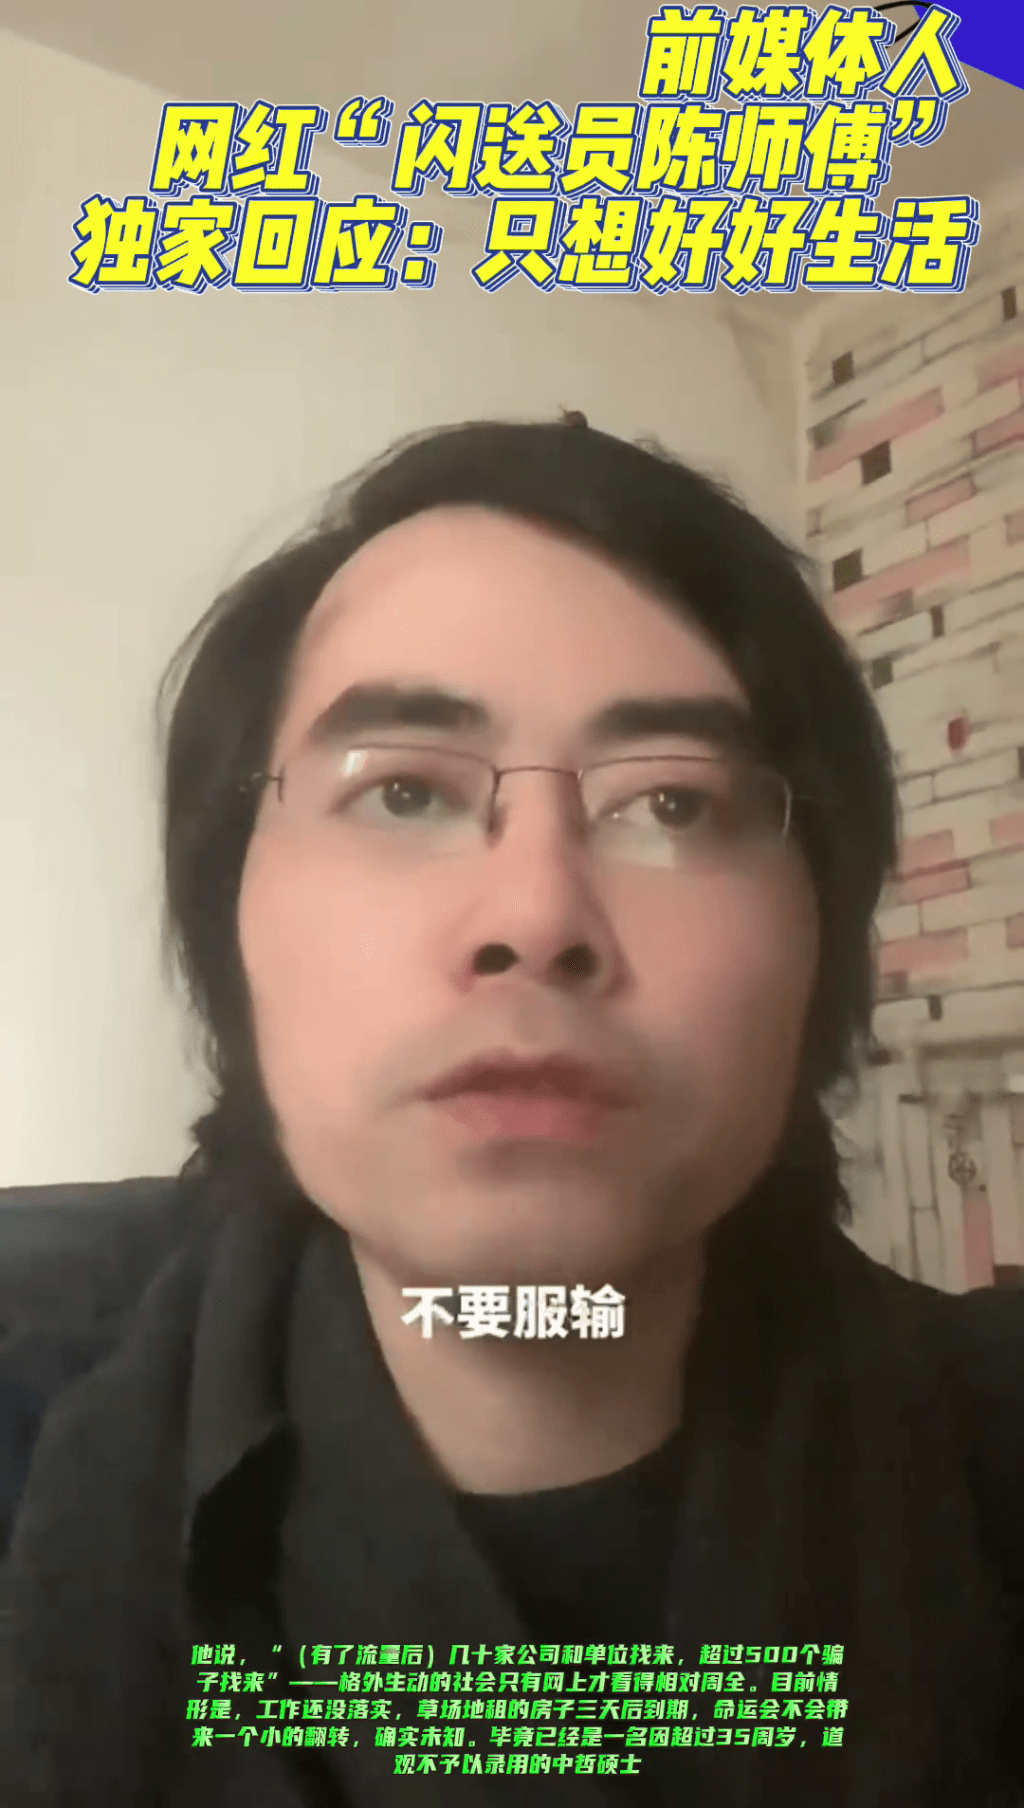 「闪送员陈师傅」在最新发布的影片表示不认命、不服输。